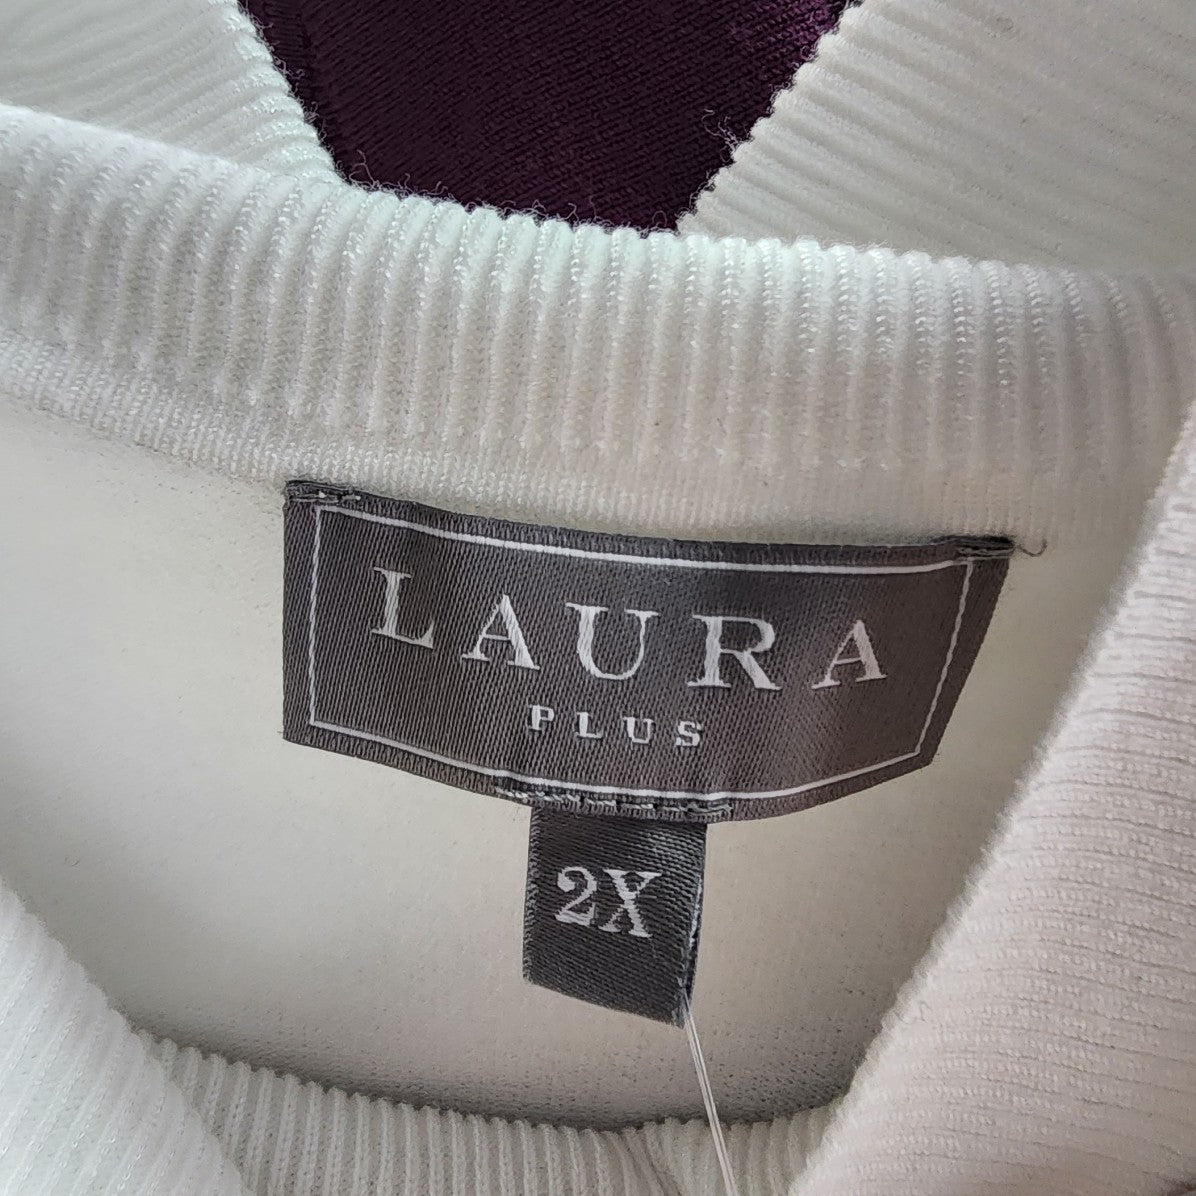 Laura Plus White Turtle Neck Sleeveless Top Size 2X